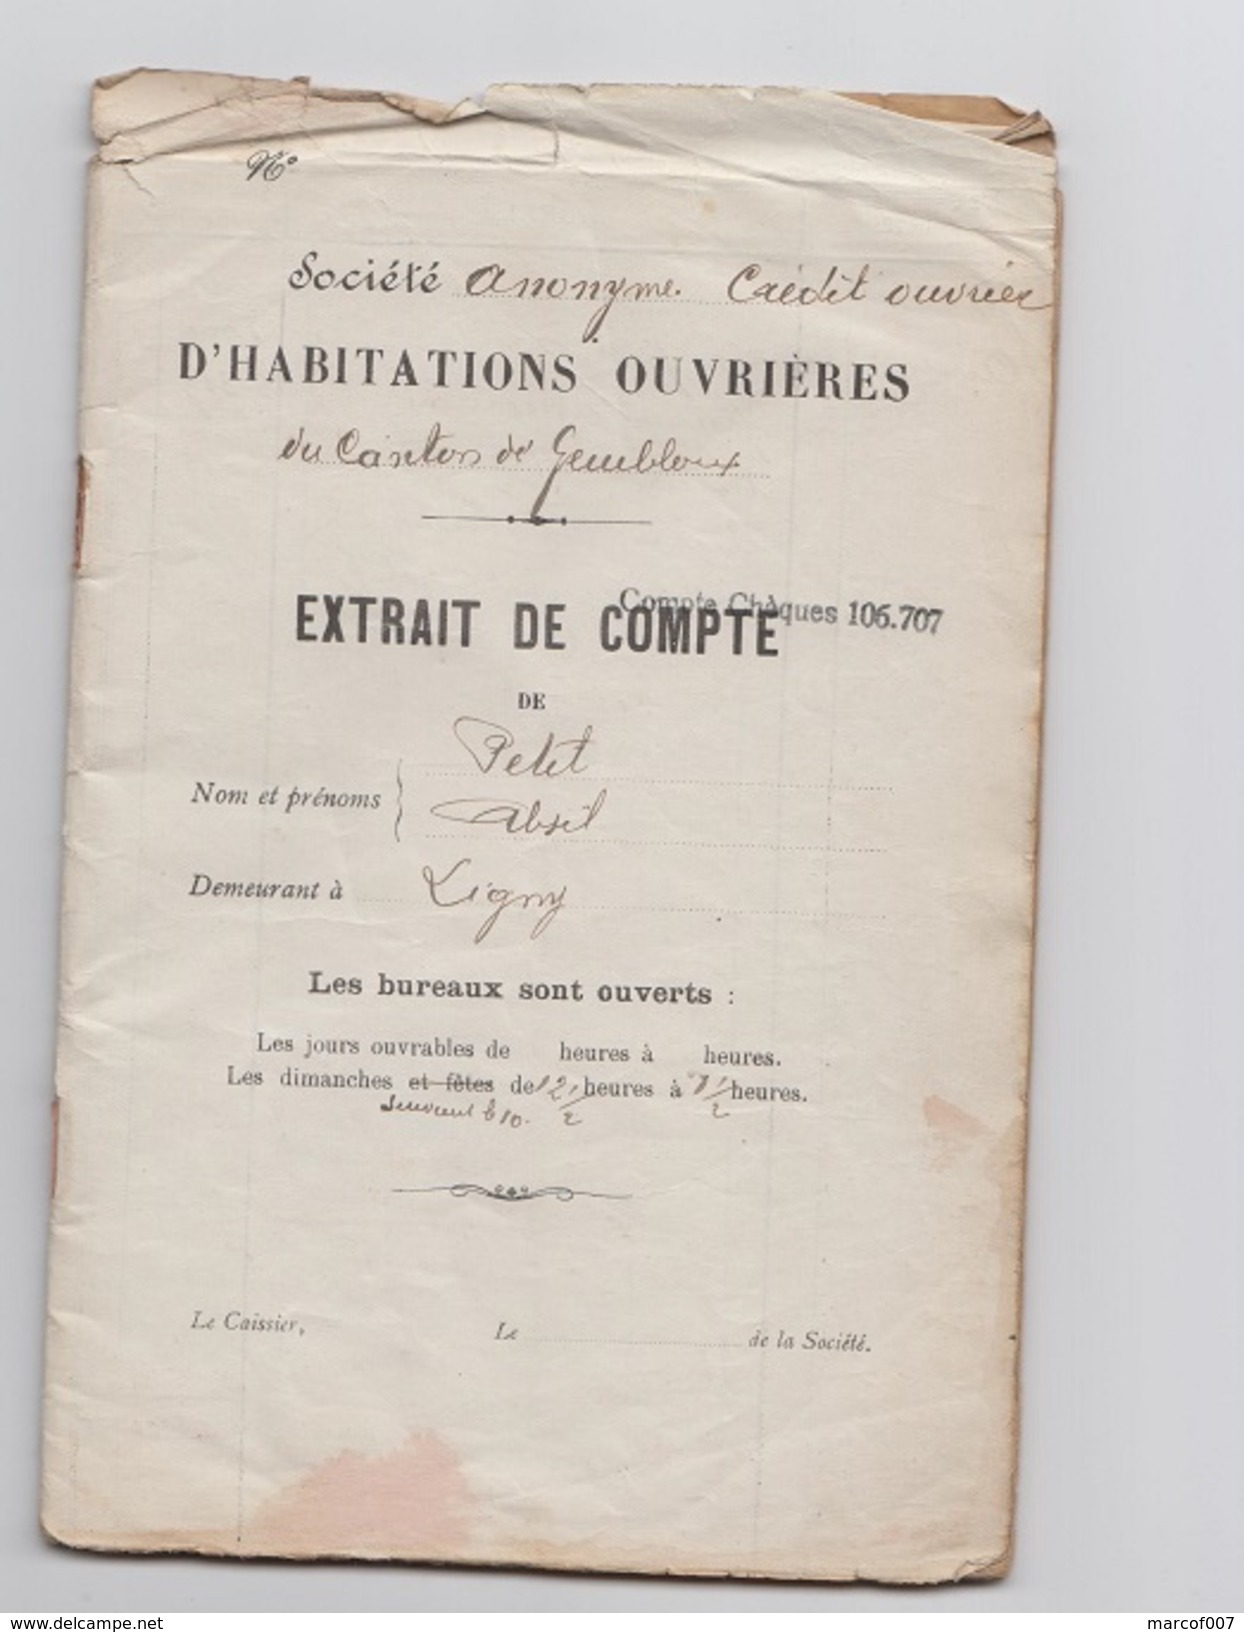 1923 - Societe Anonyme Credit Ouvrier - Extrait De Compte - Mr PETIT - LIGNY - Banque & Assurance